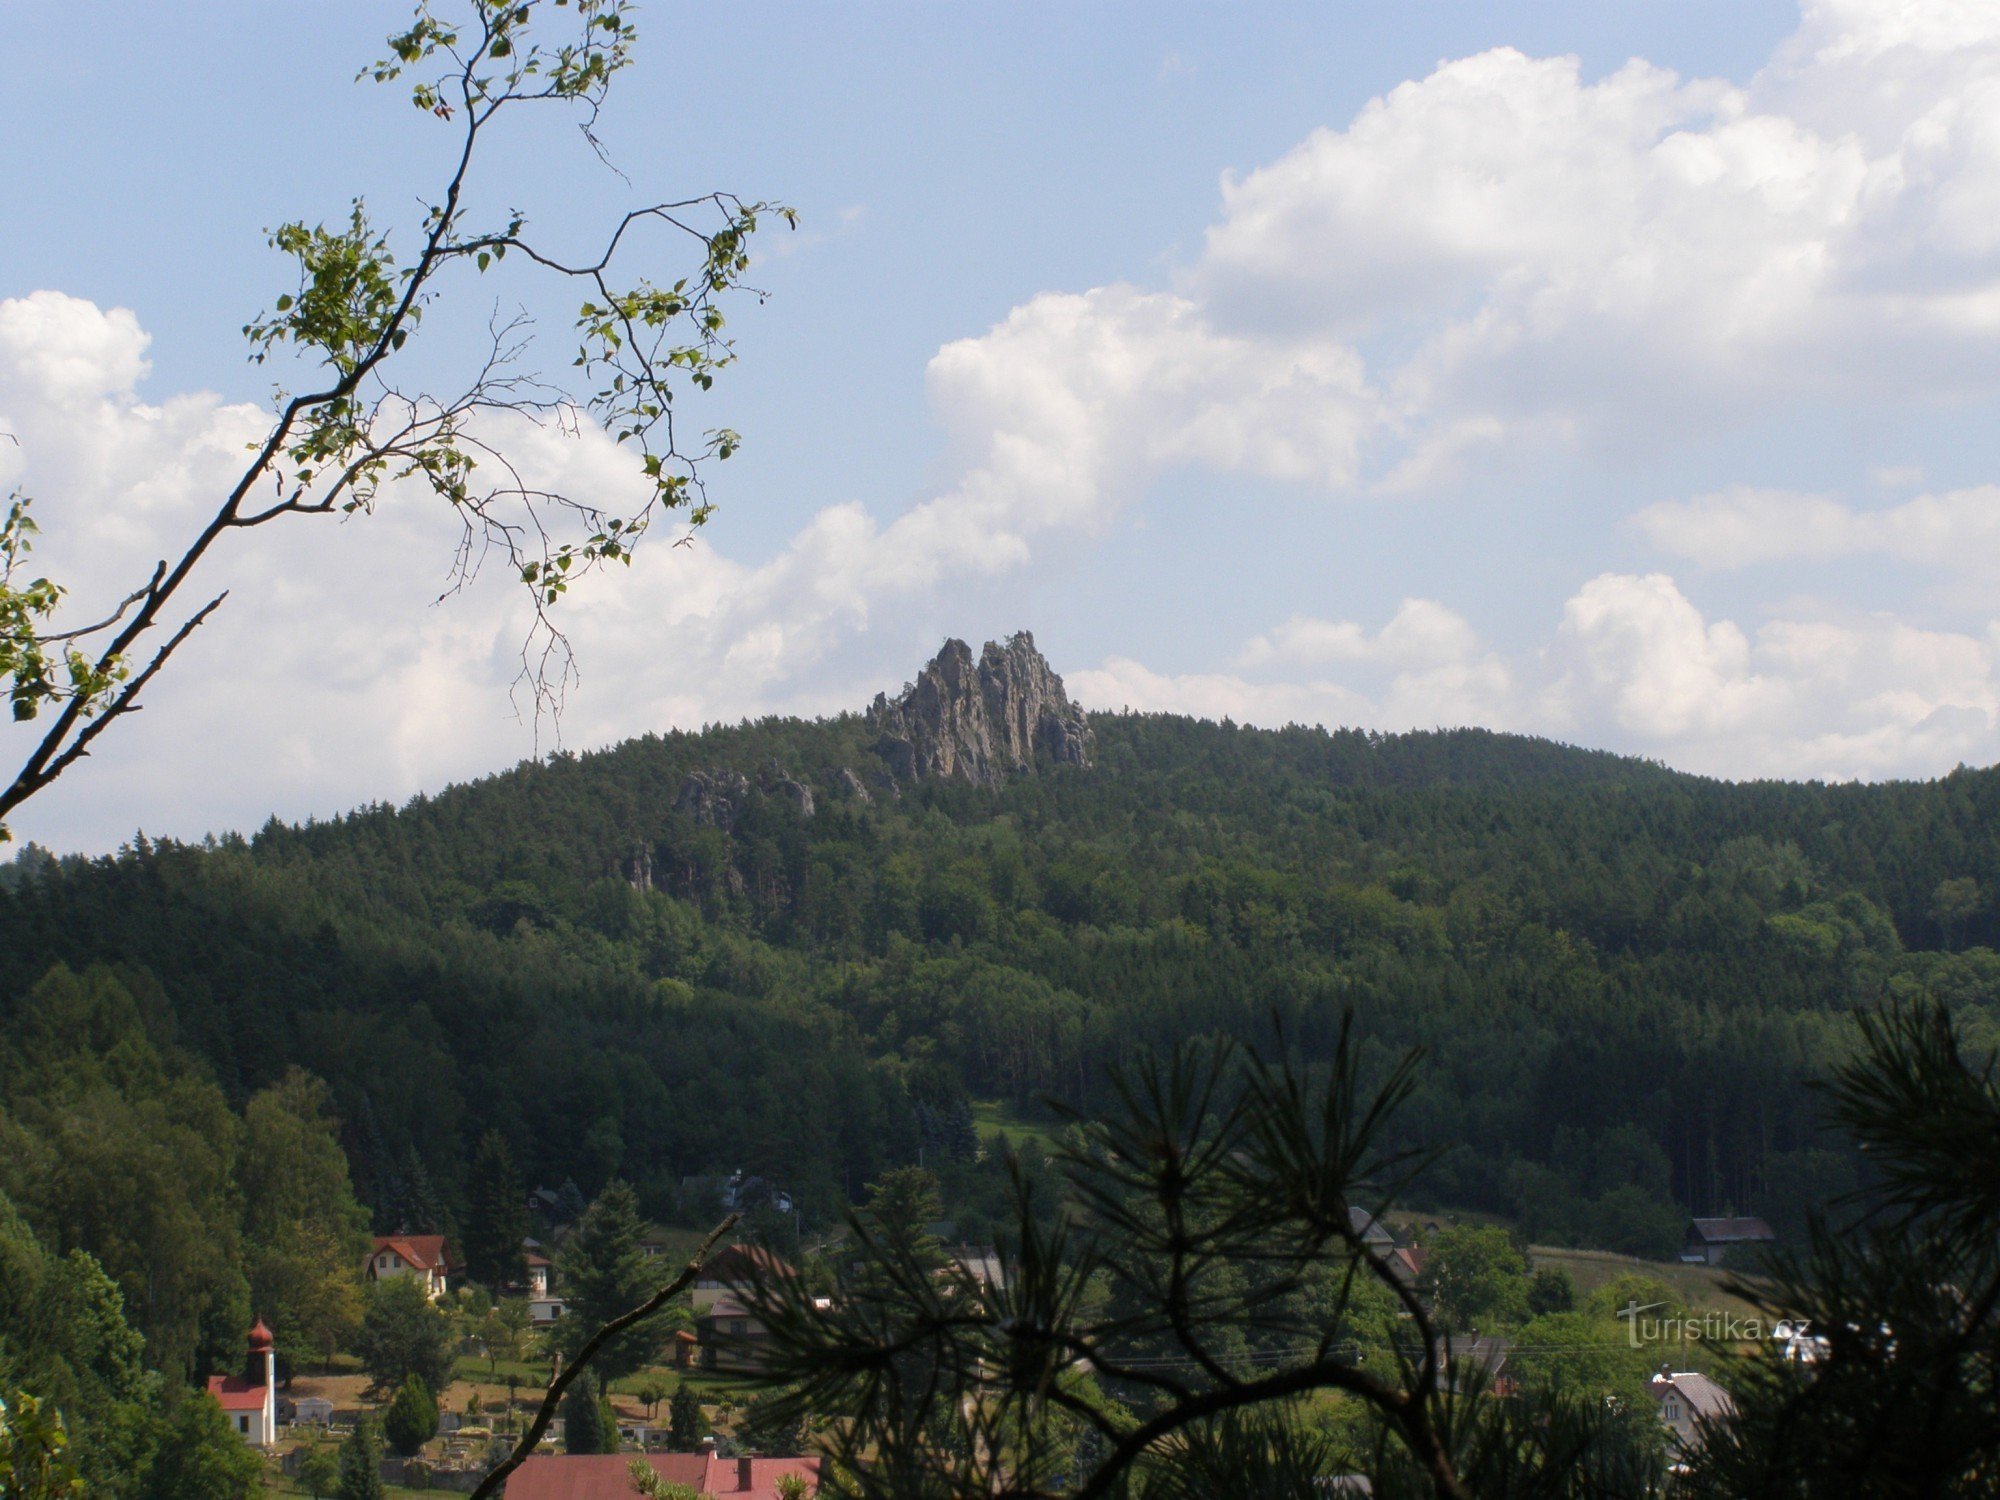 Torra stenar från Zahrádek utsiktspunkt